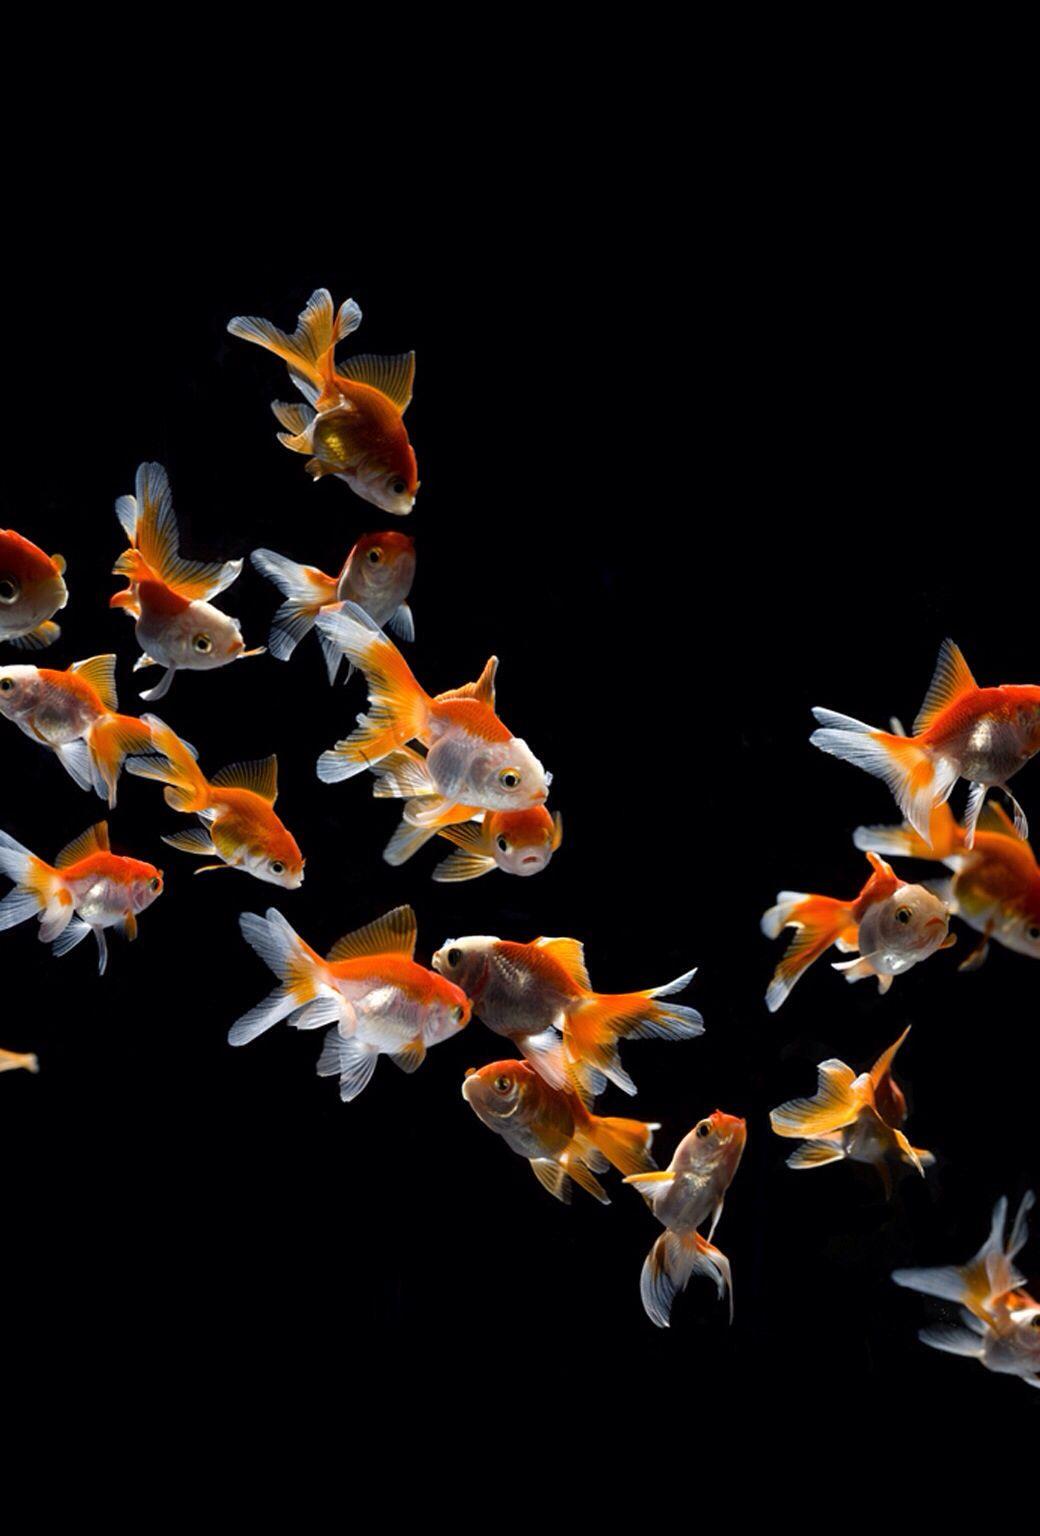 Cool animal background. Fish wallpaper, Goldfish wallpaper